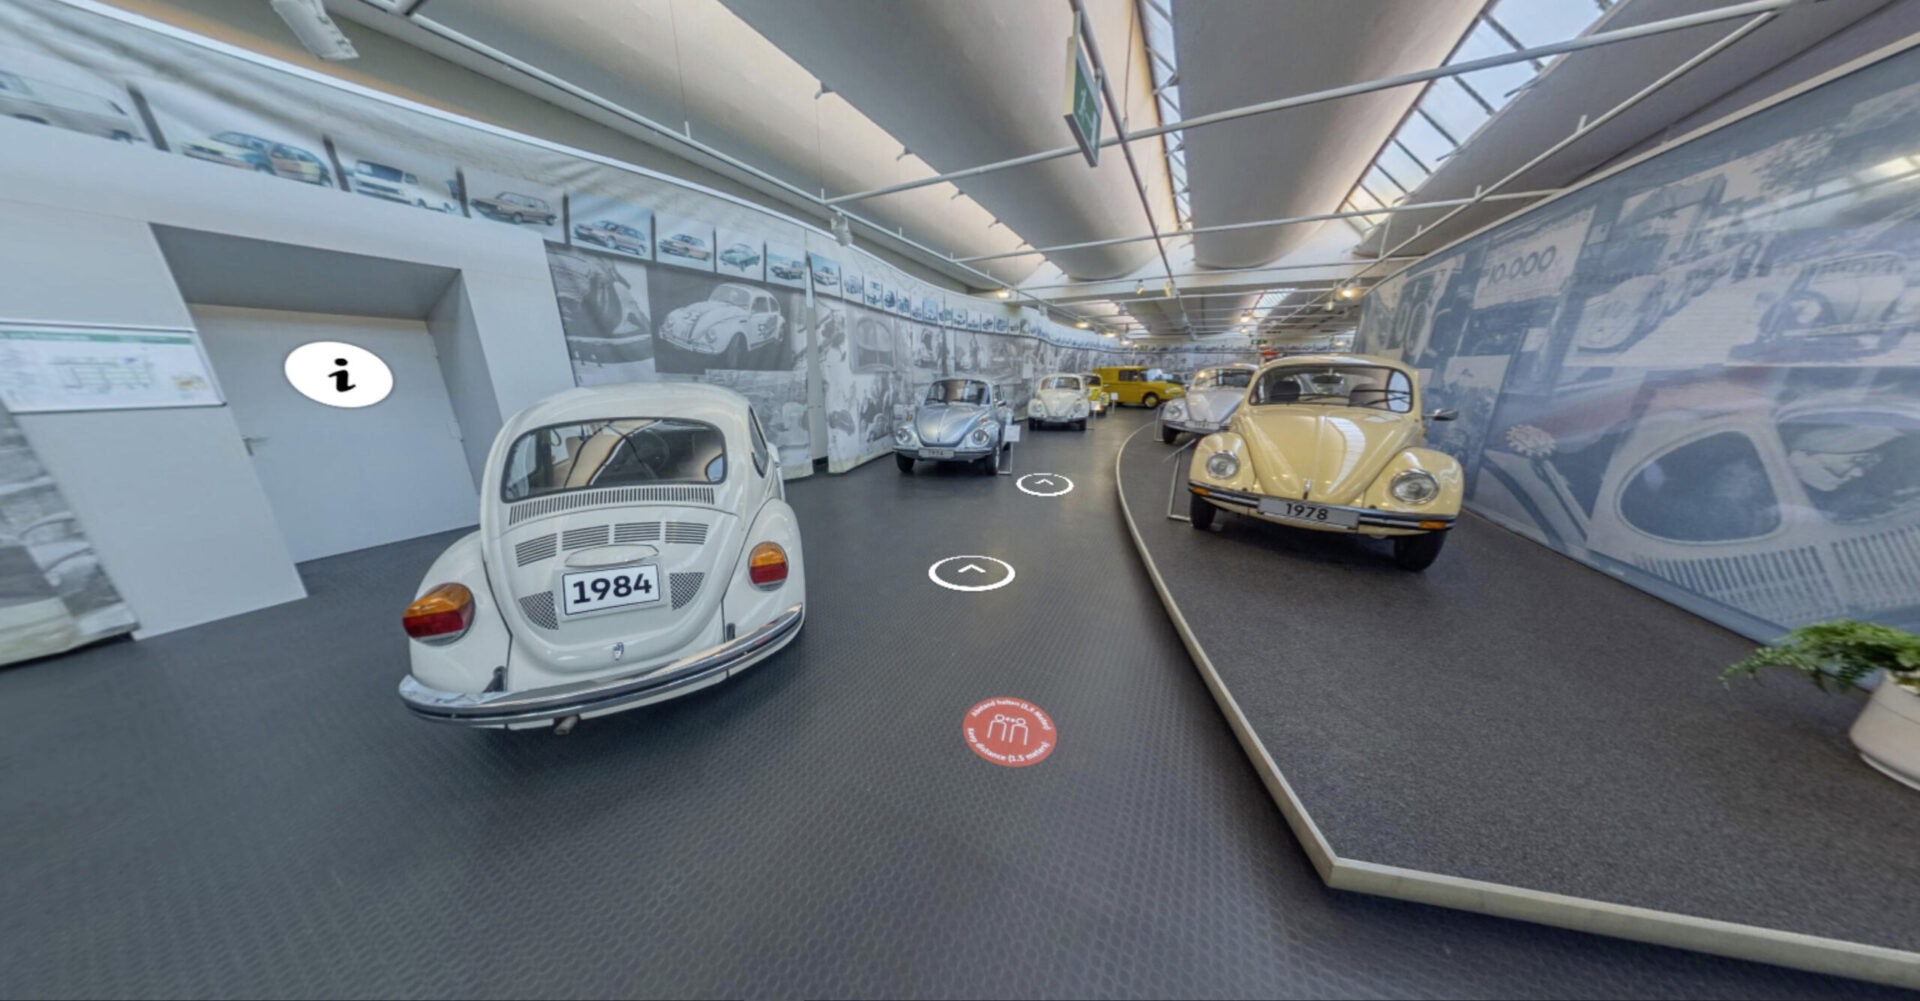 Виртуальный музей Volkswagen Жука откроется на официальном сайте музея VW с 16 мая